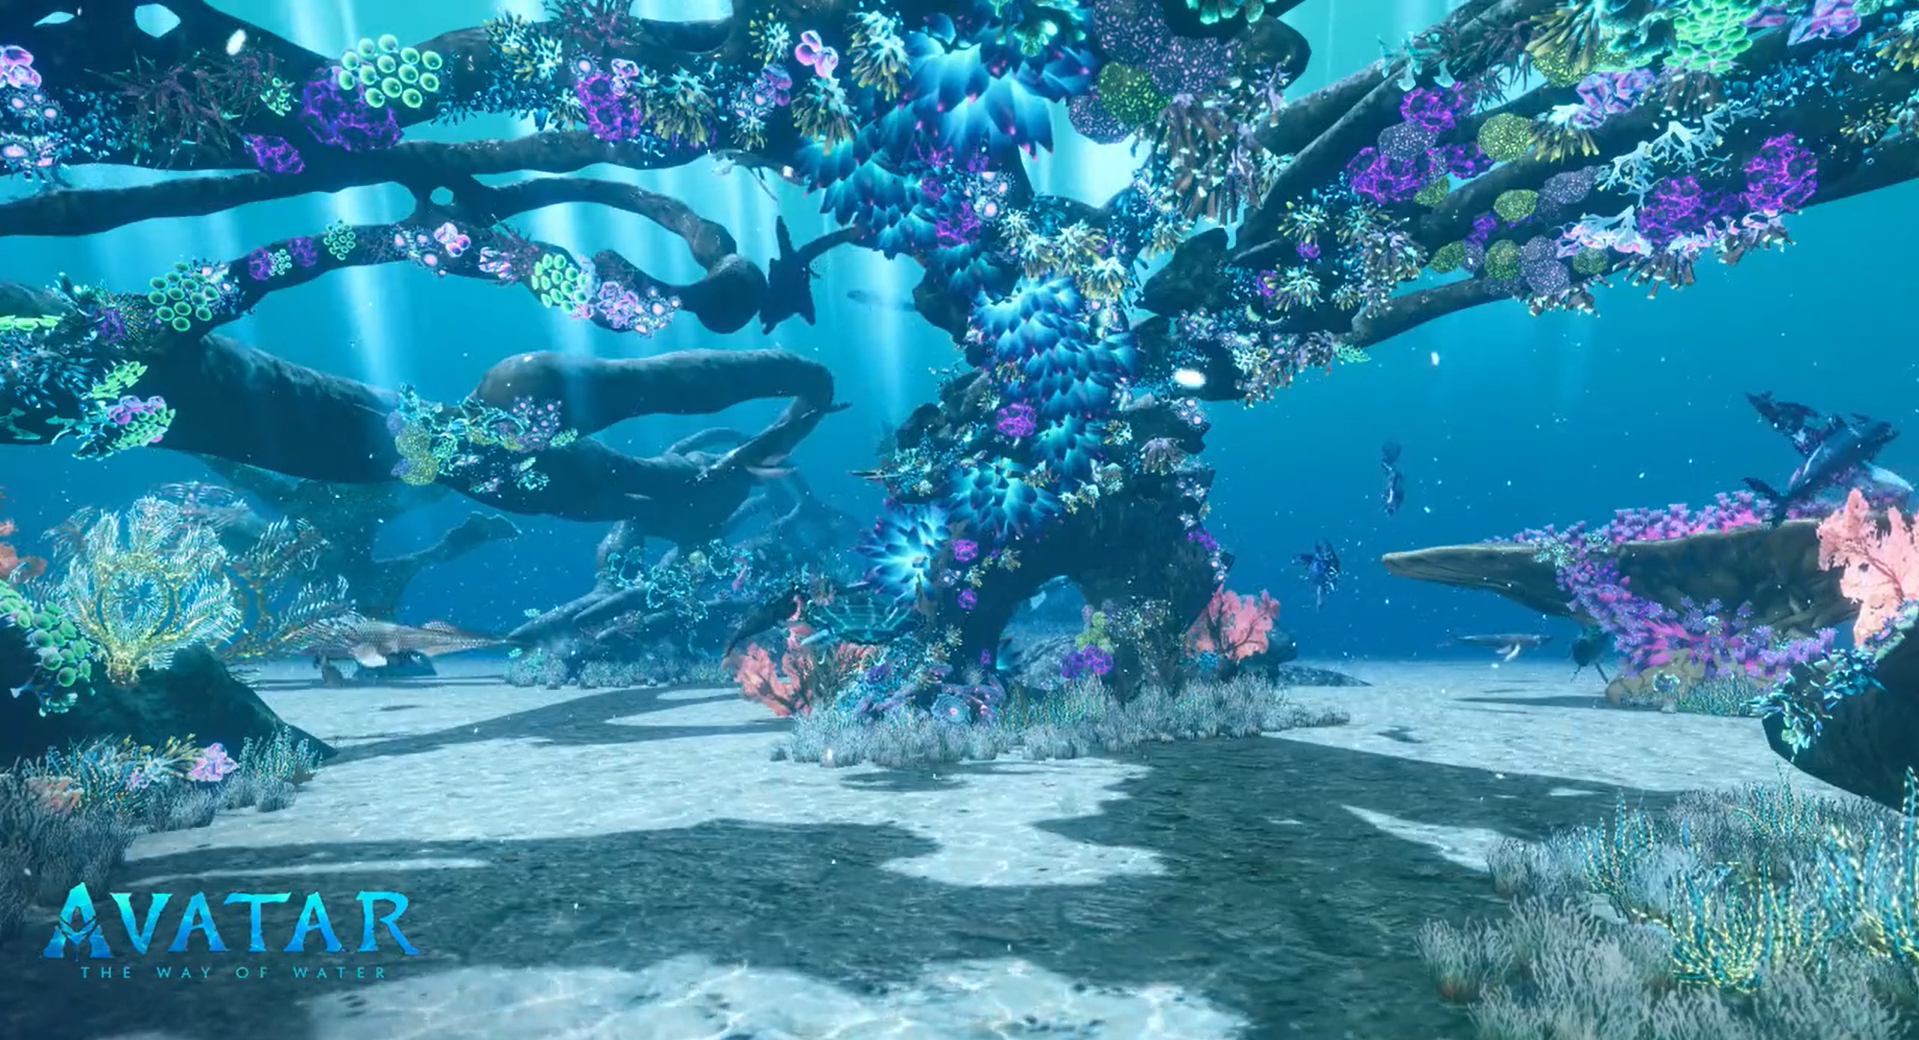 oceano virtual inspirado em Pandora, planeta do filme Avatar